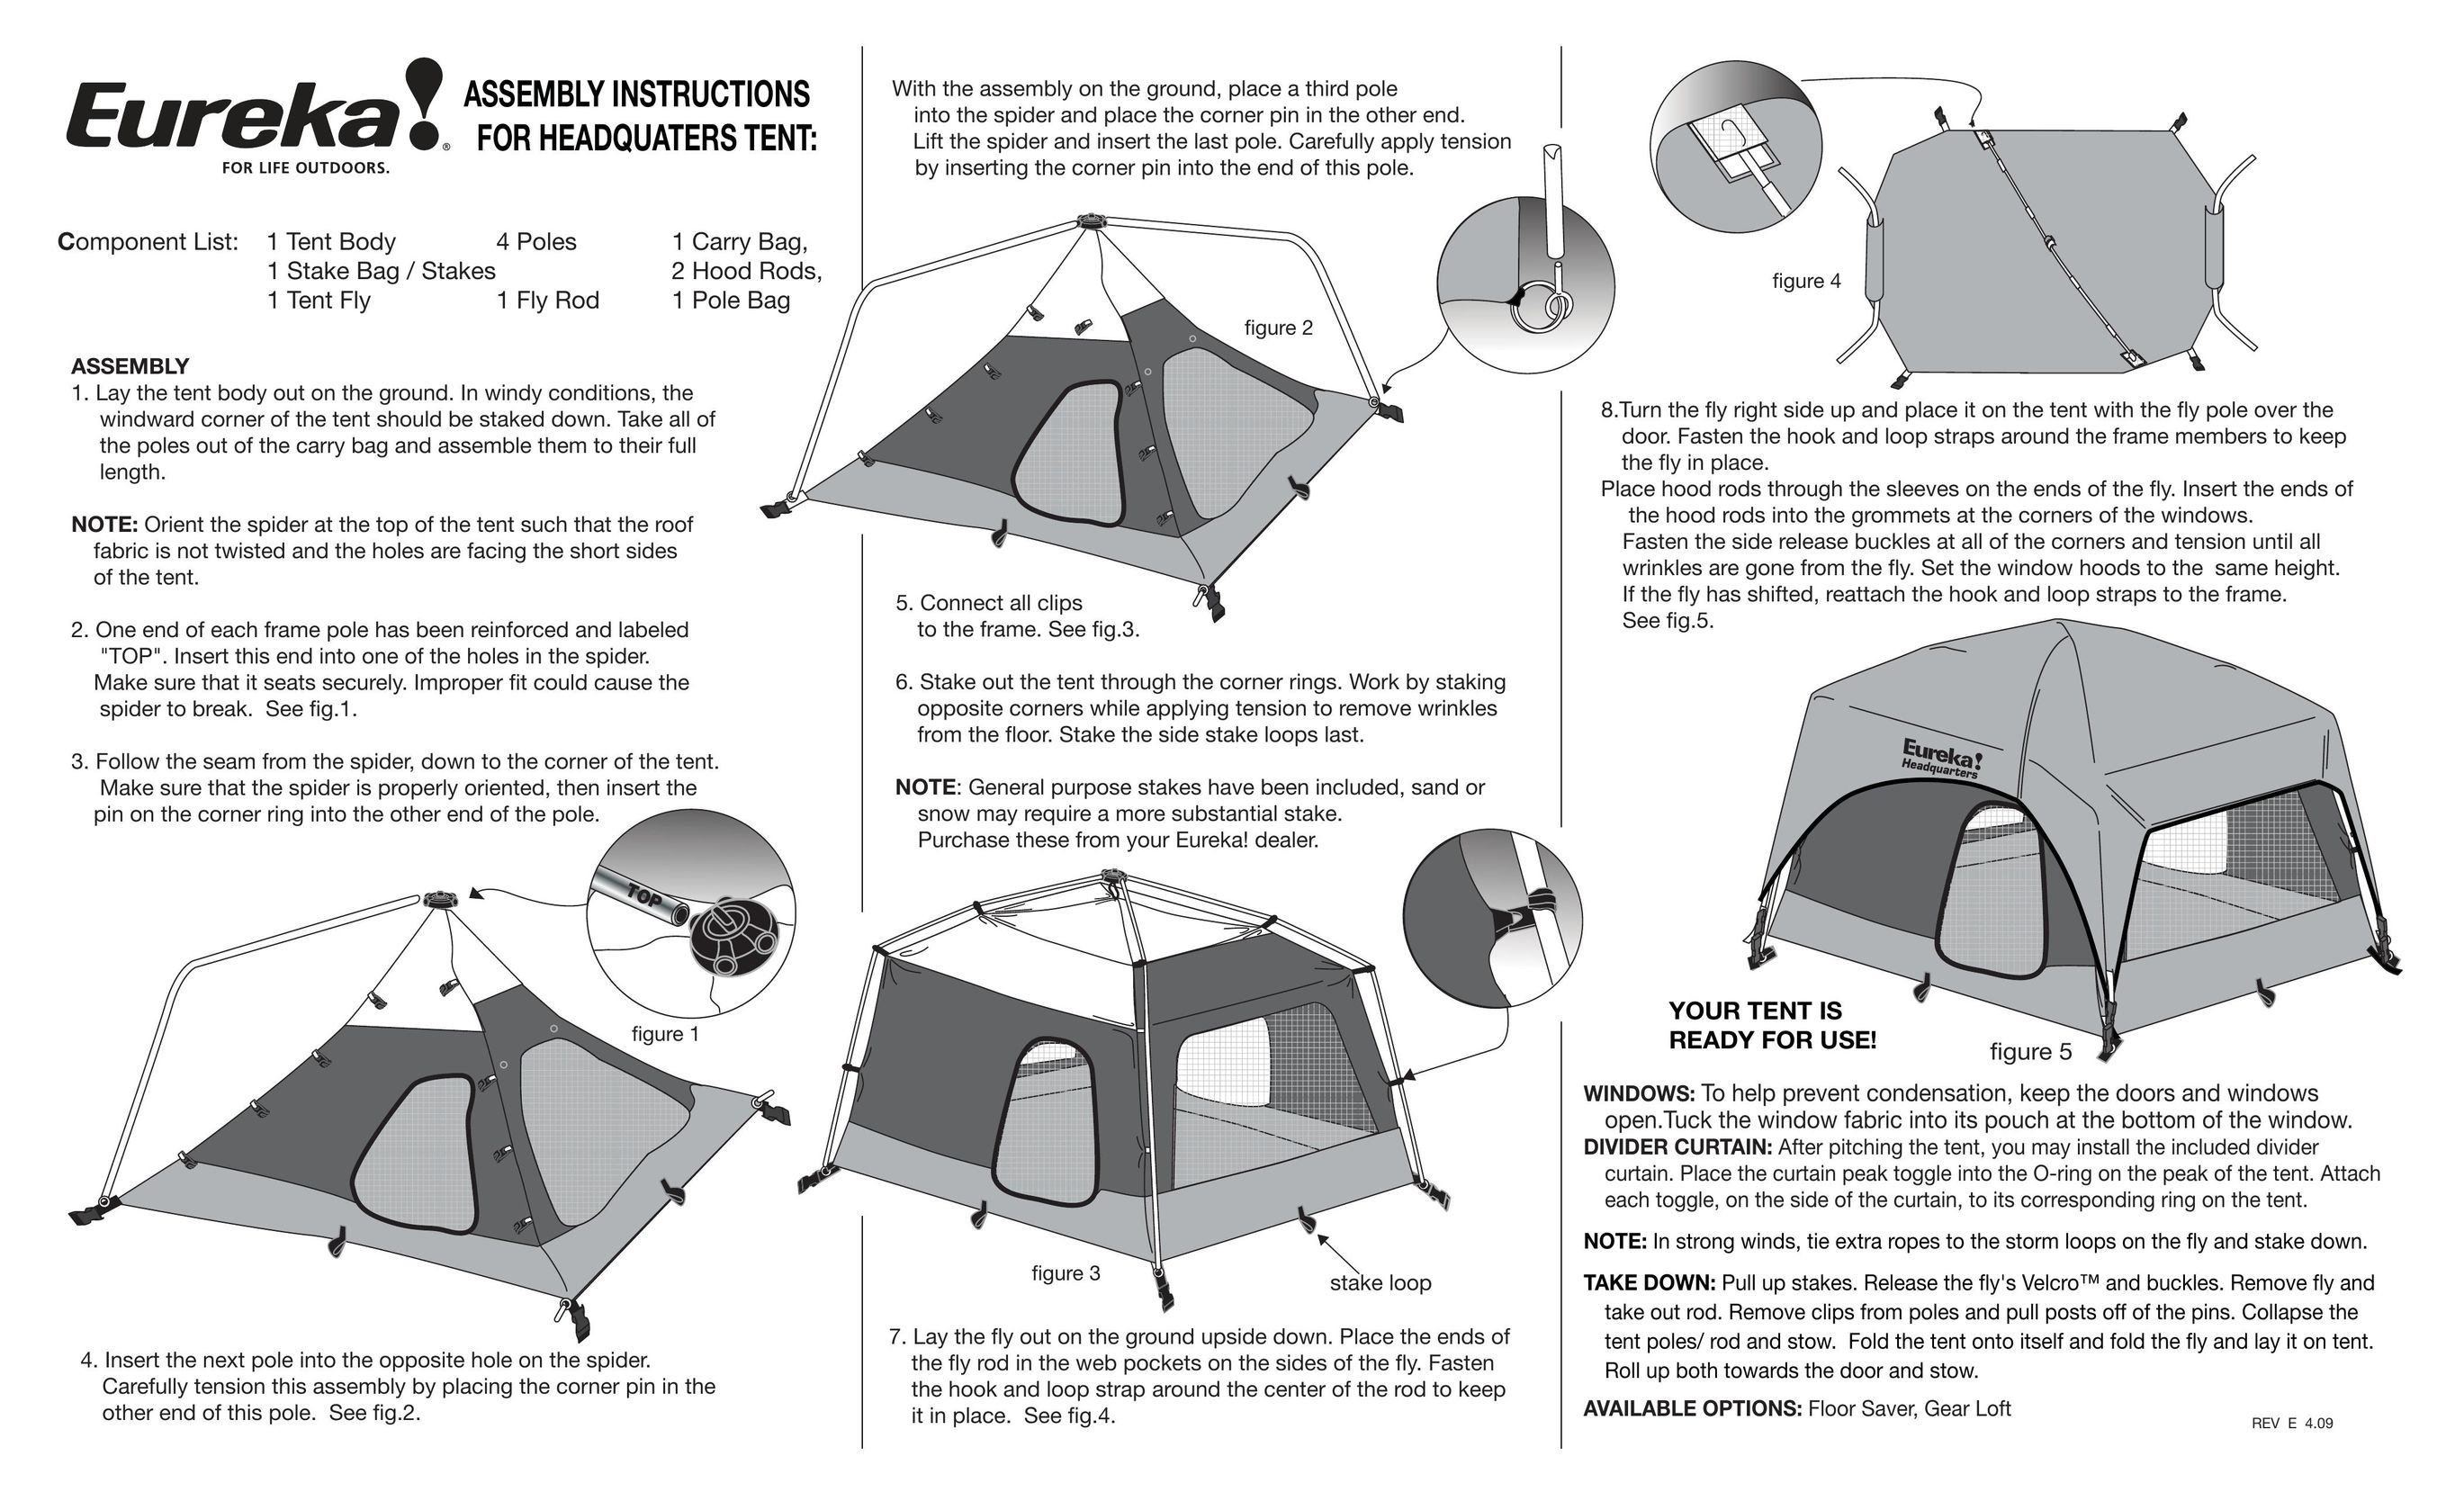 Eureka! Tents Headquarters Tent User Manual